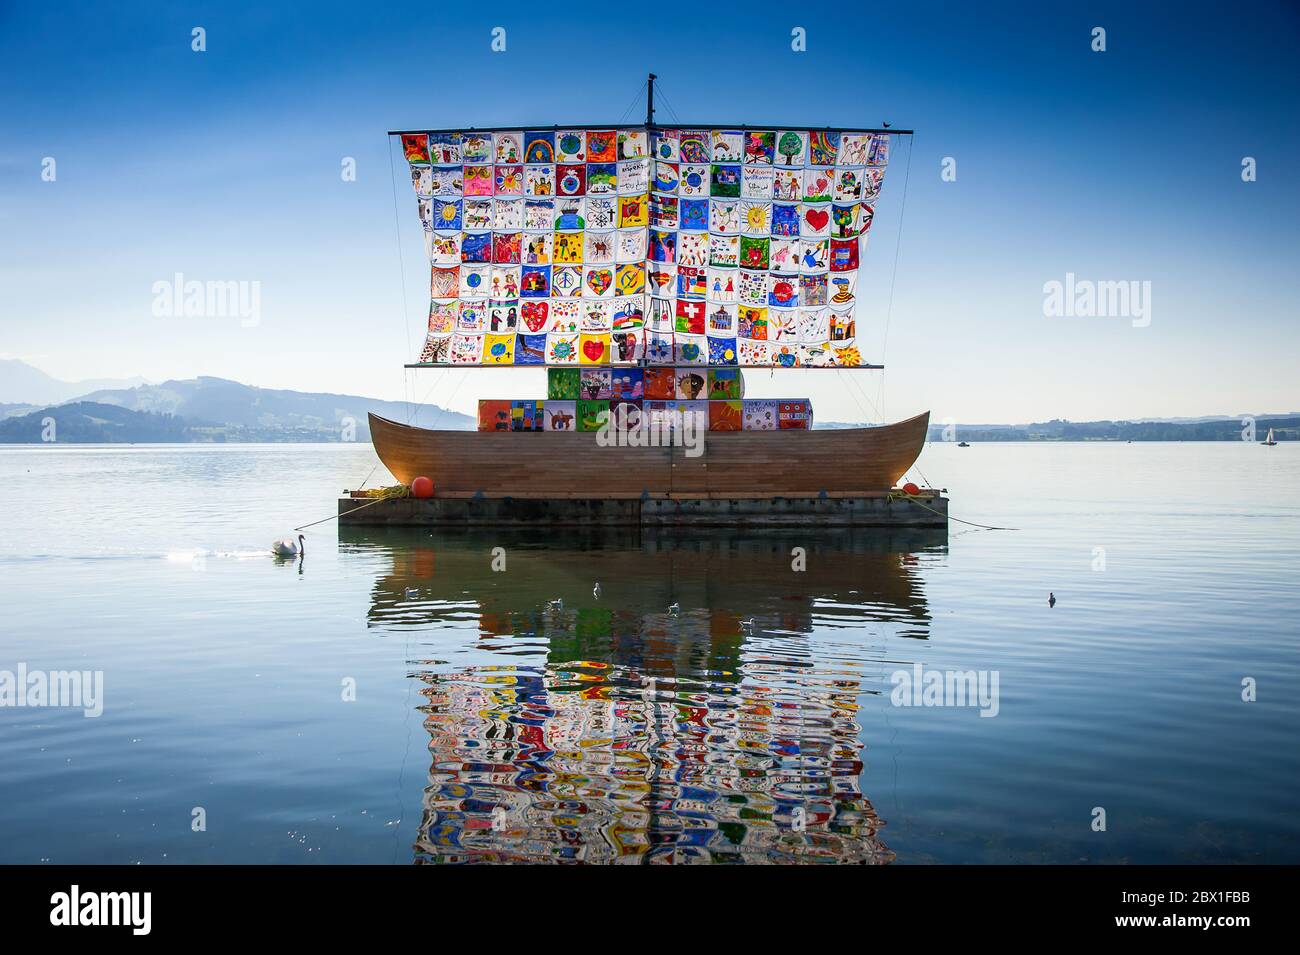 El buque de tolerancia, una instalación artística internacional, en colaboración con los niños locales para difundir mensajes de esperanza y tolerancia al mundo. Foto de stock